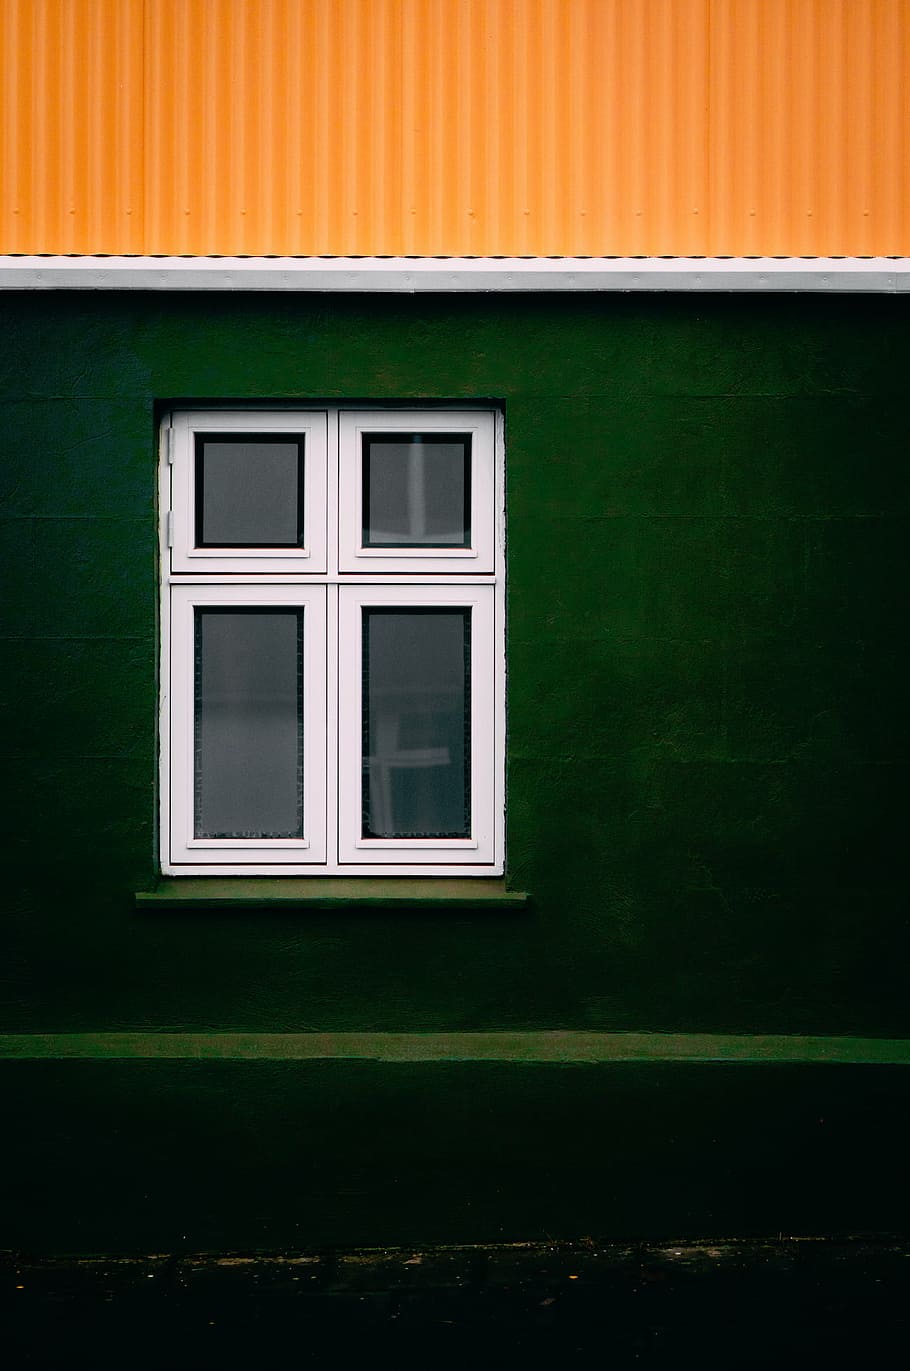 persegi panjang, putih, bingkai jendela kaca, tempat, jendela, struktur, kaca, hijau, kuning, arsitektur